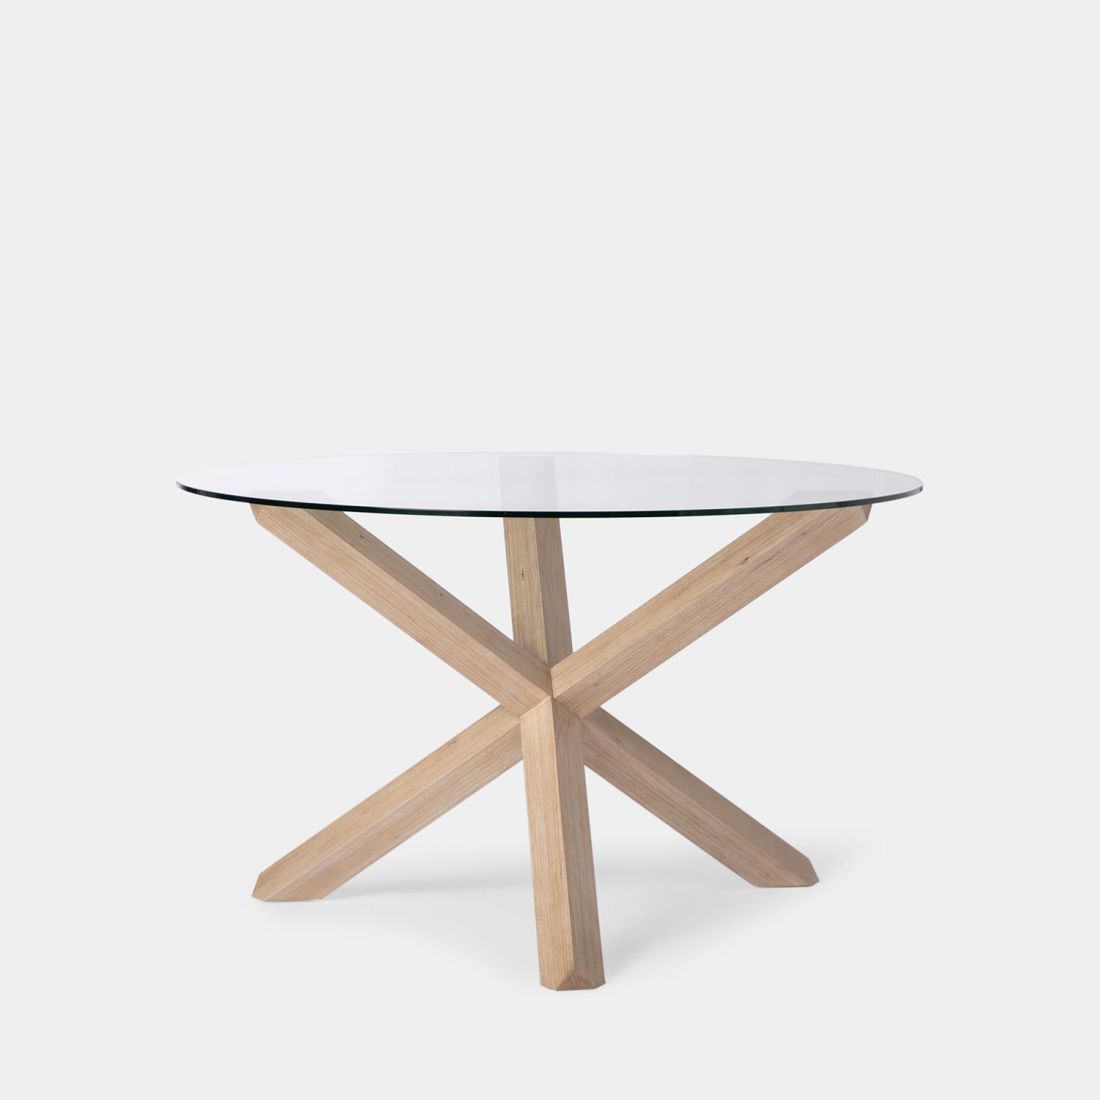 La mesa de comedor redonda Isak es la mesa ideal con la que completar la decoración de tu salón